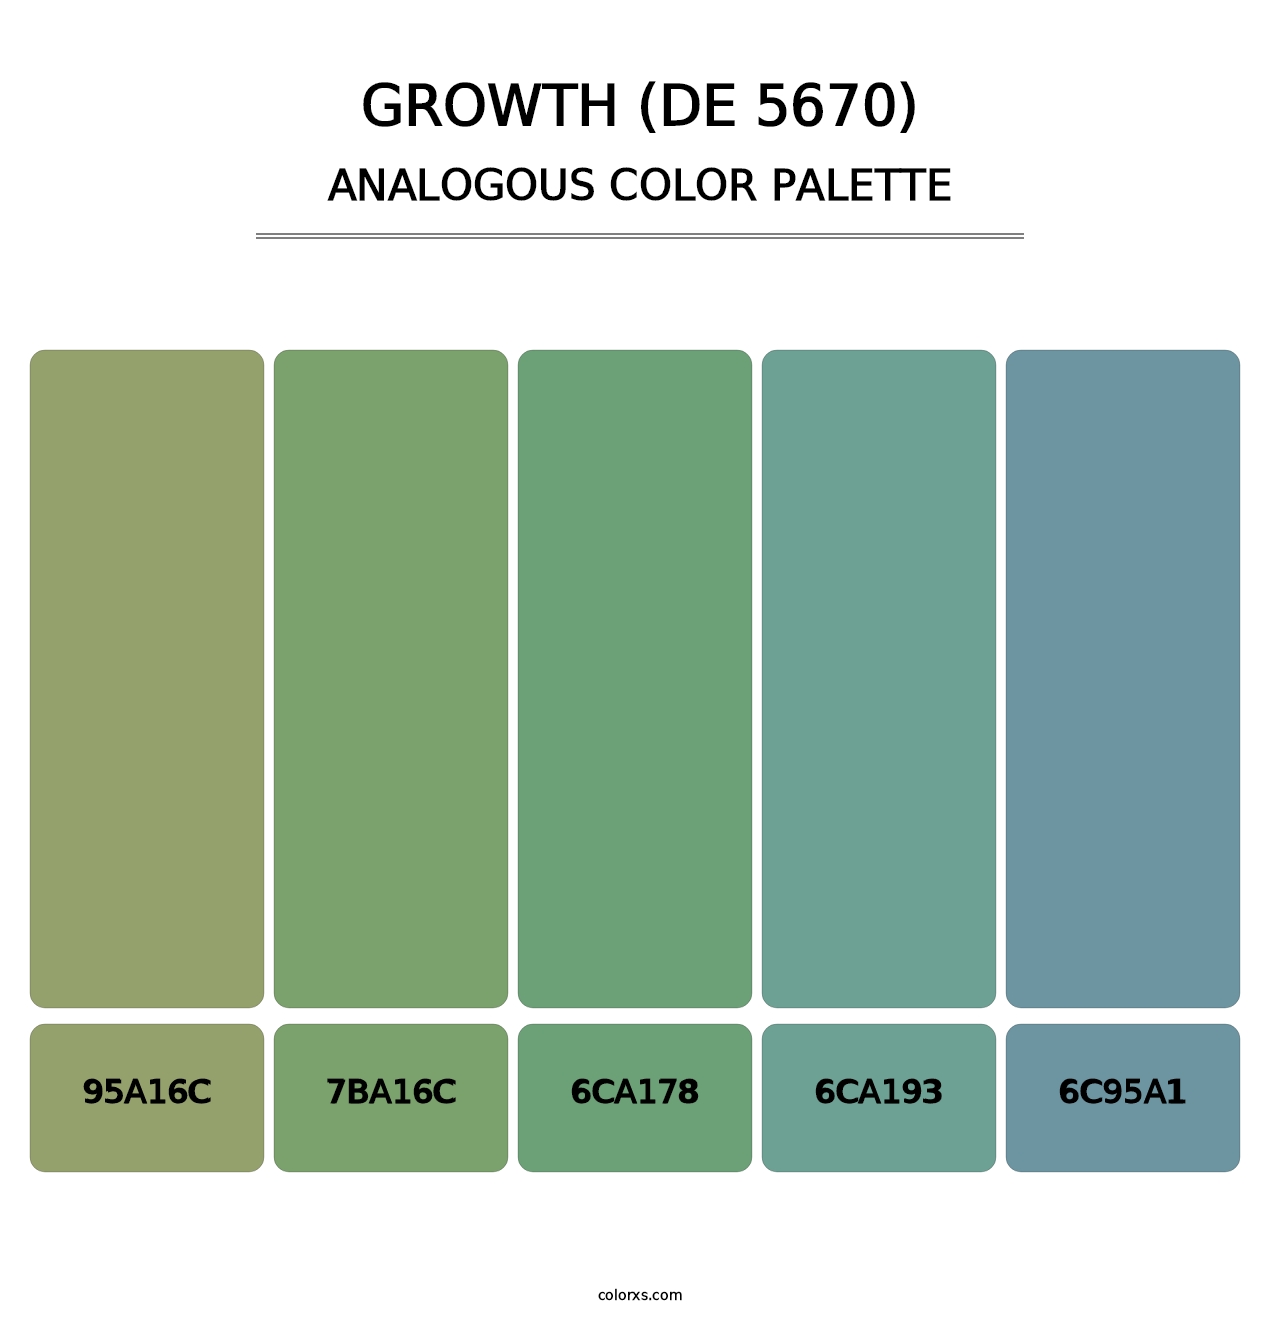 Growth (DE 5670) - Analogous Color Palette